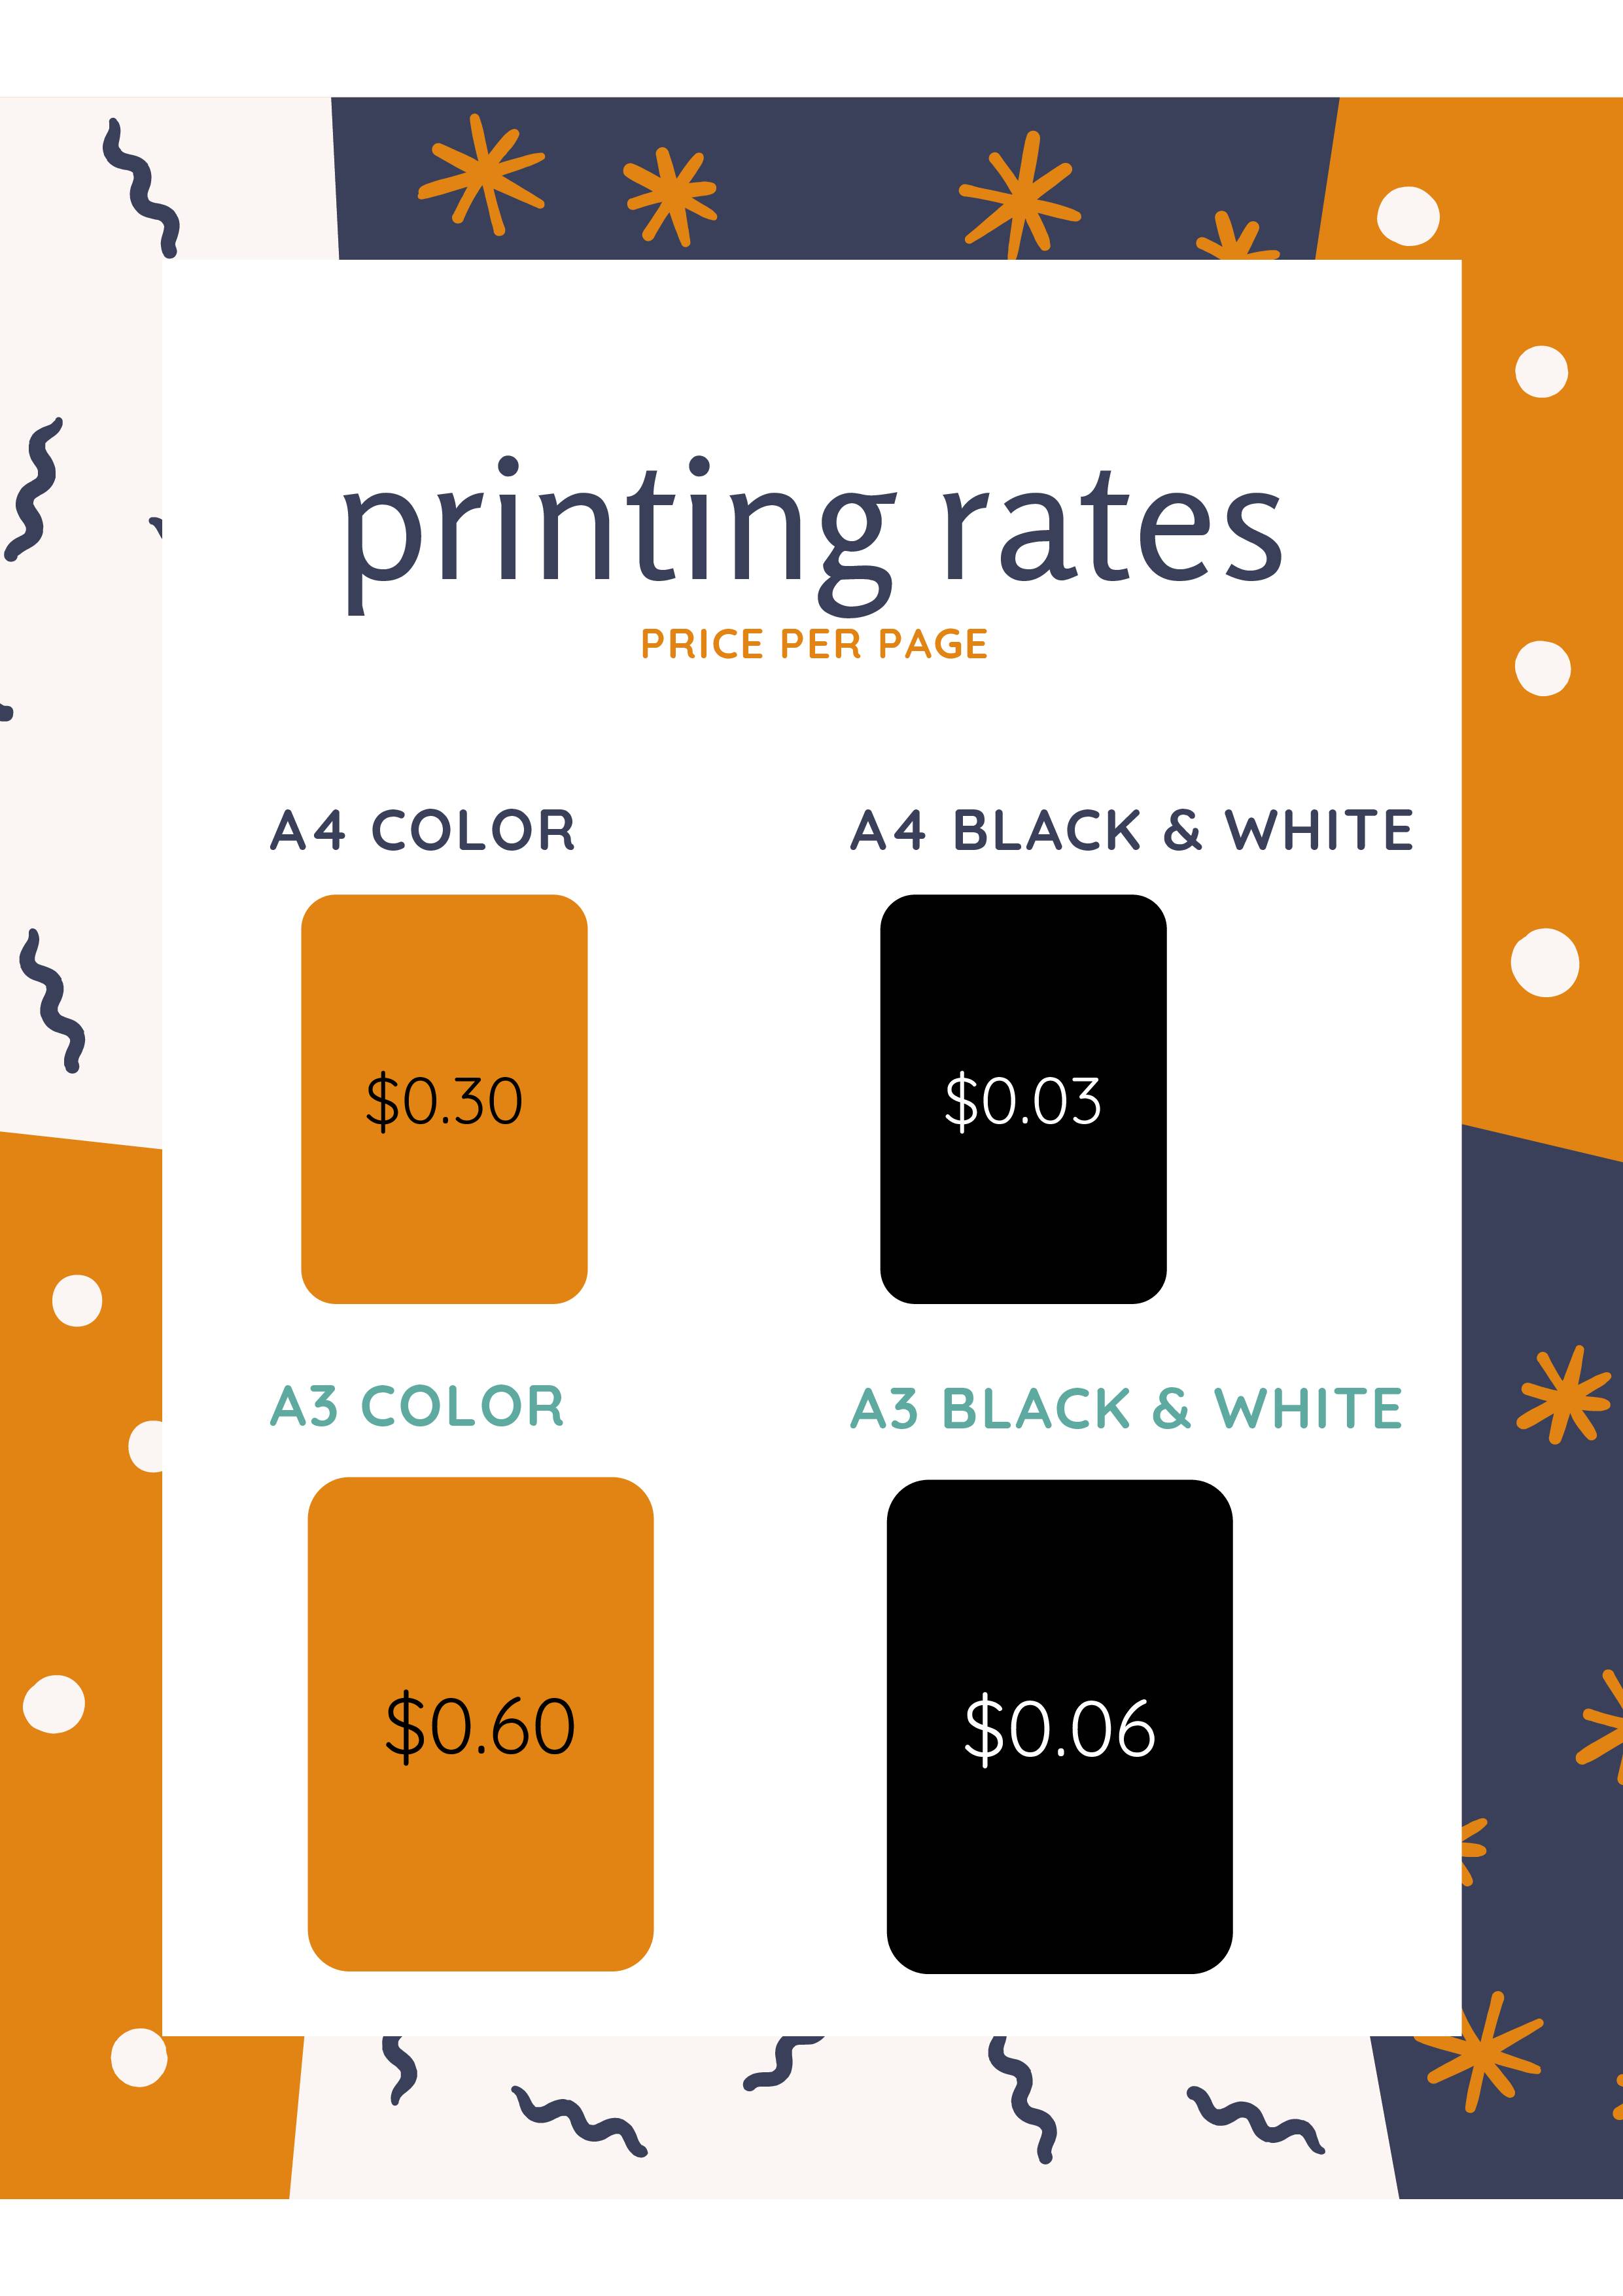 Printing rates